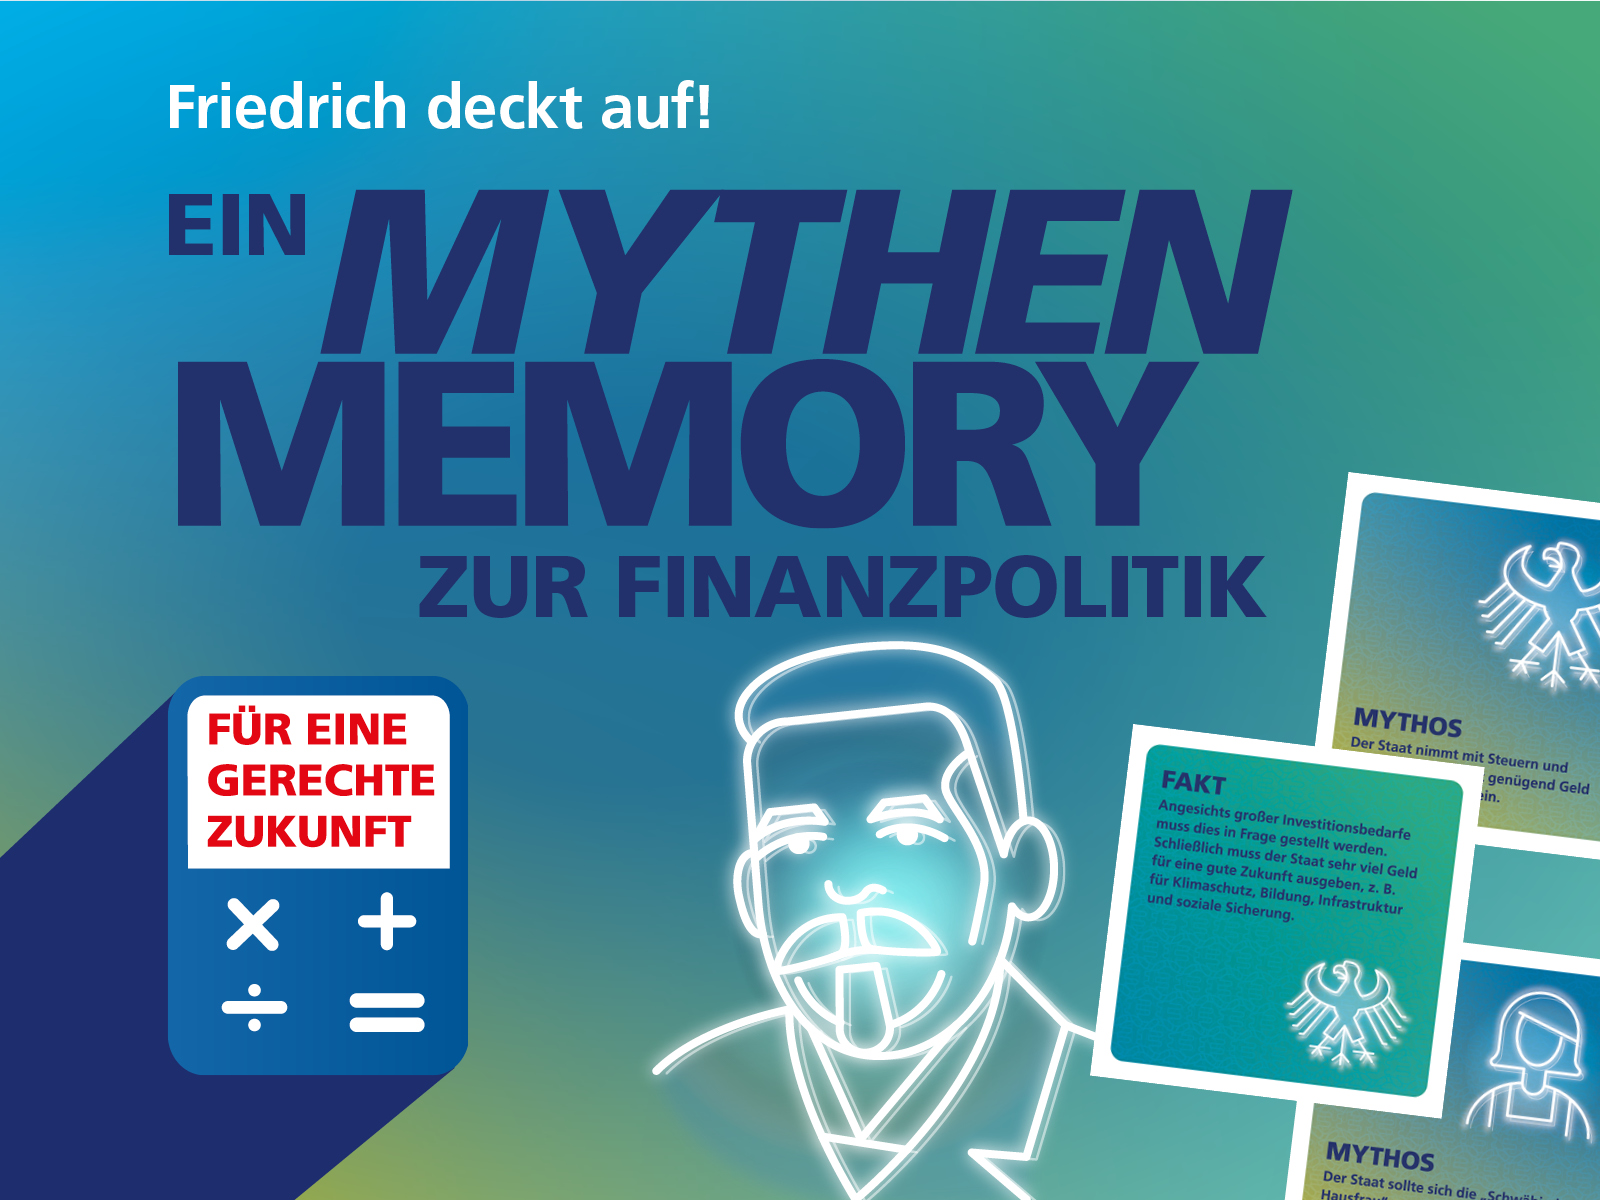 Grafik zum finanzpolitischen Mythen Memory, mit einem Konterfei von Friedrich Ebert